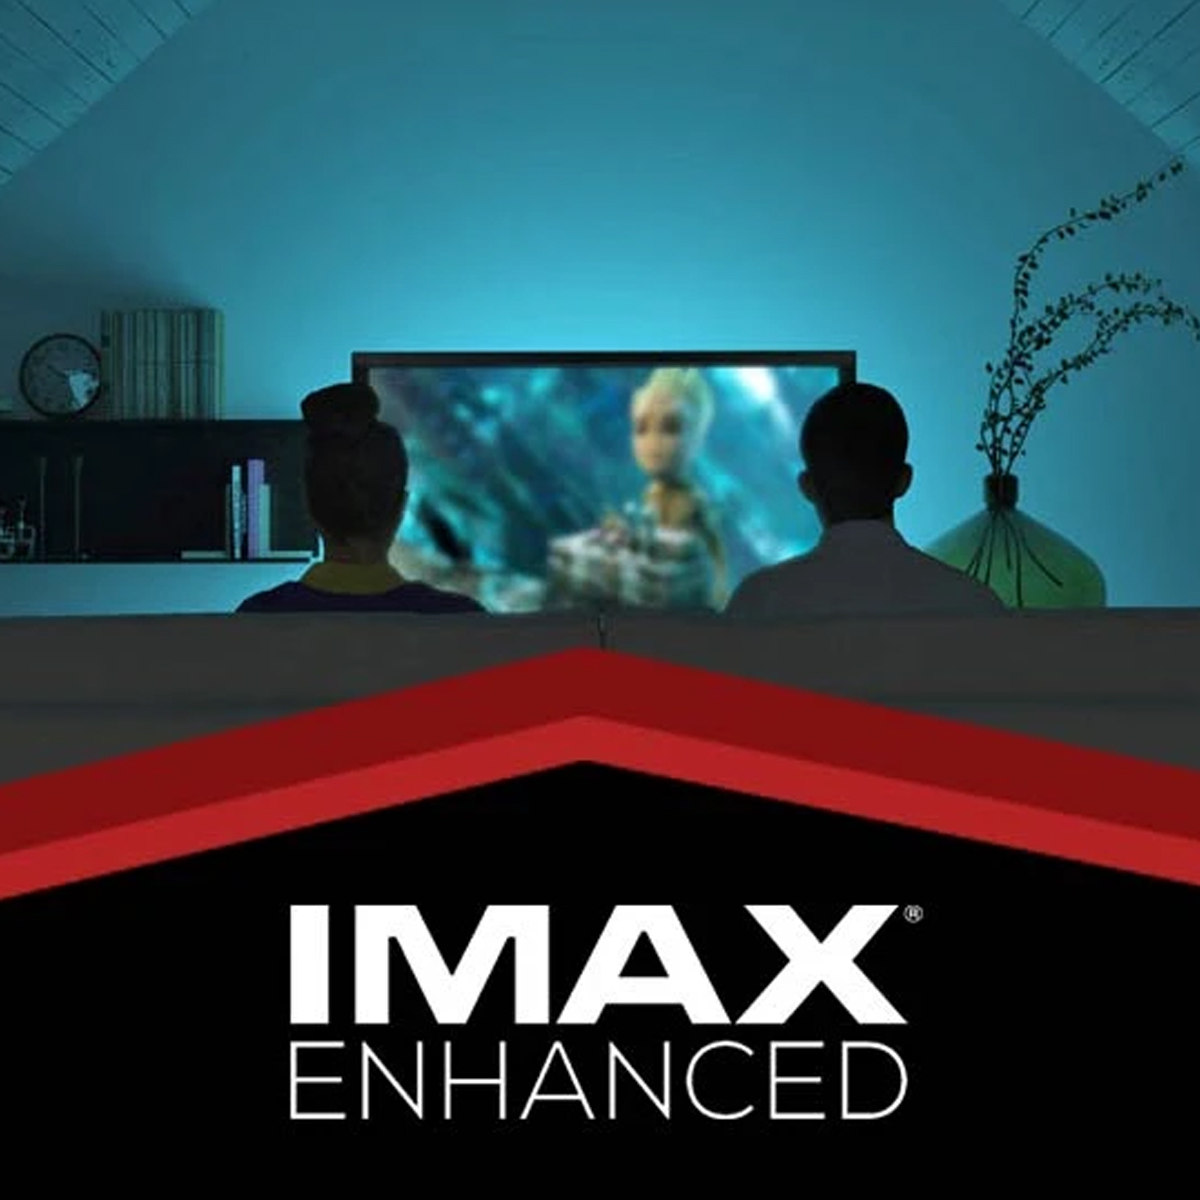 Chuẩn IMAX Enhanced trong hệ thống xem phim là gì?